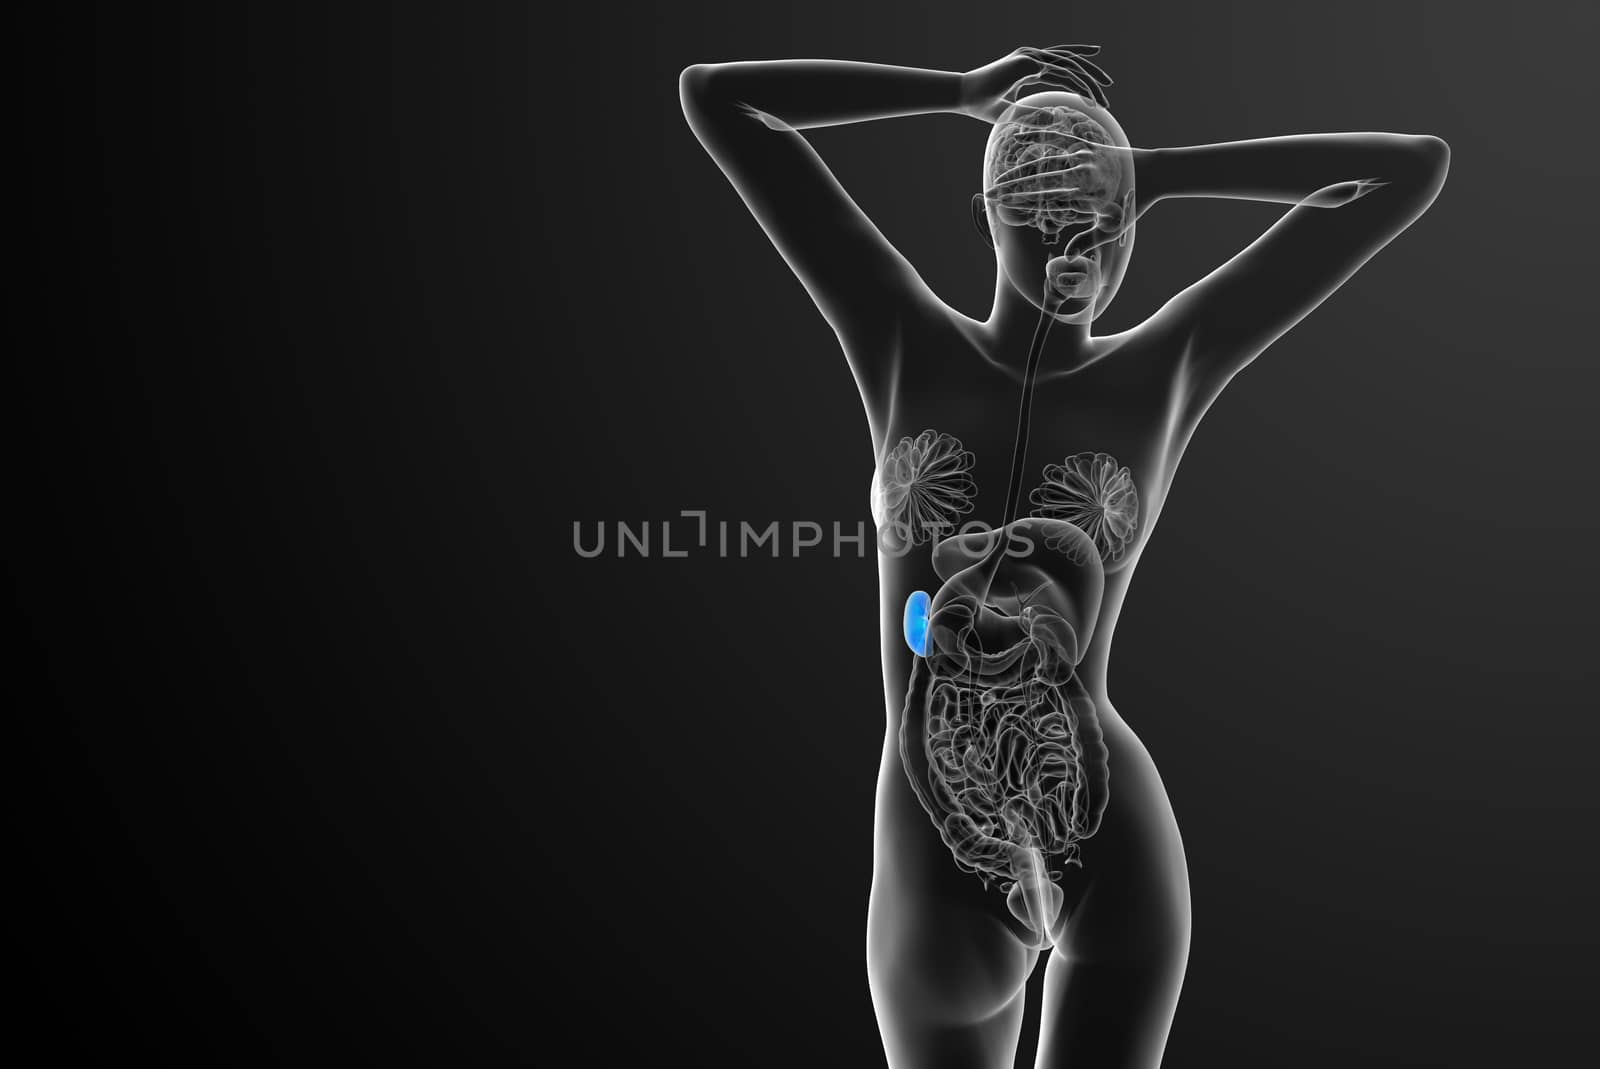 3d render medical illustration of the spleen - back view